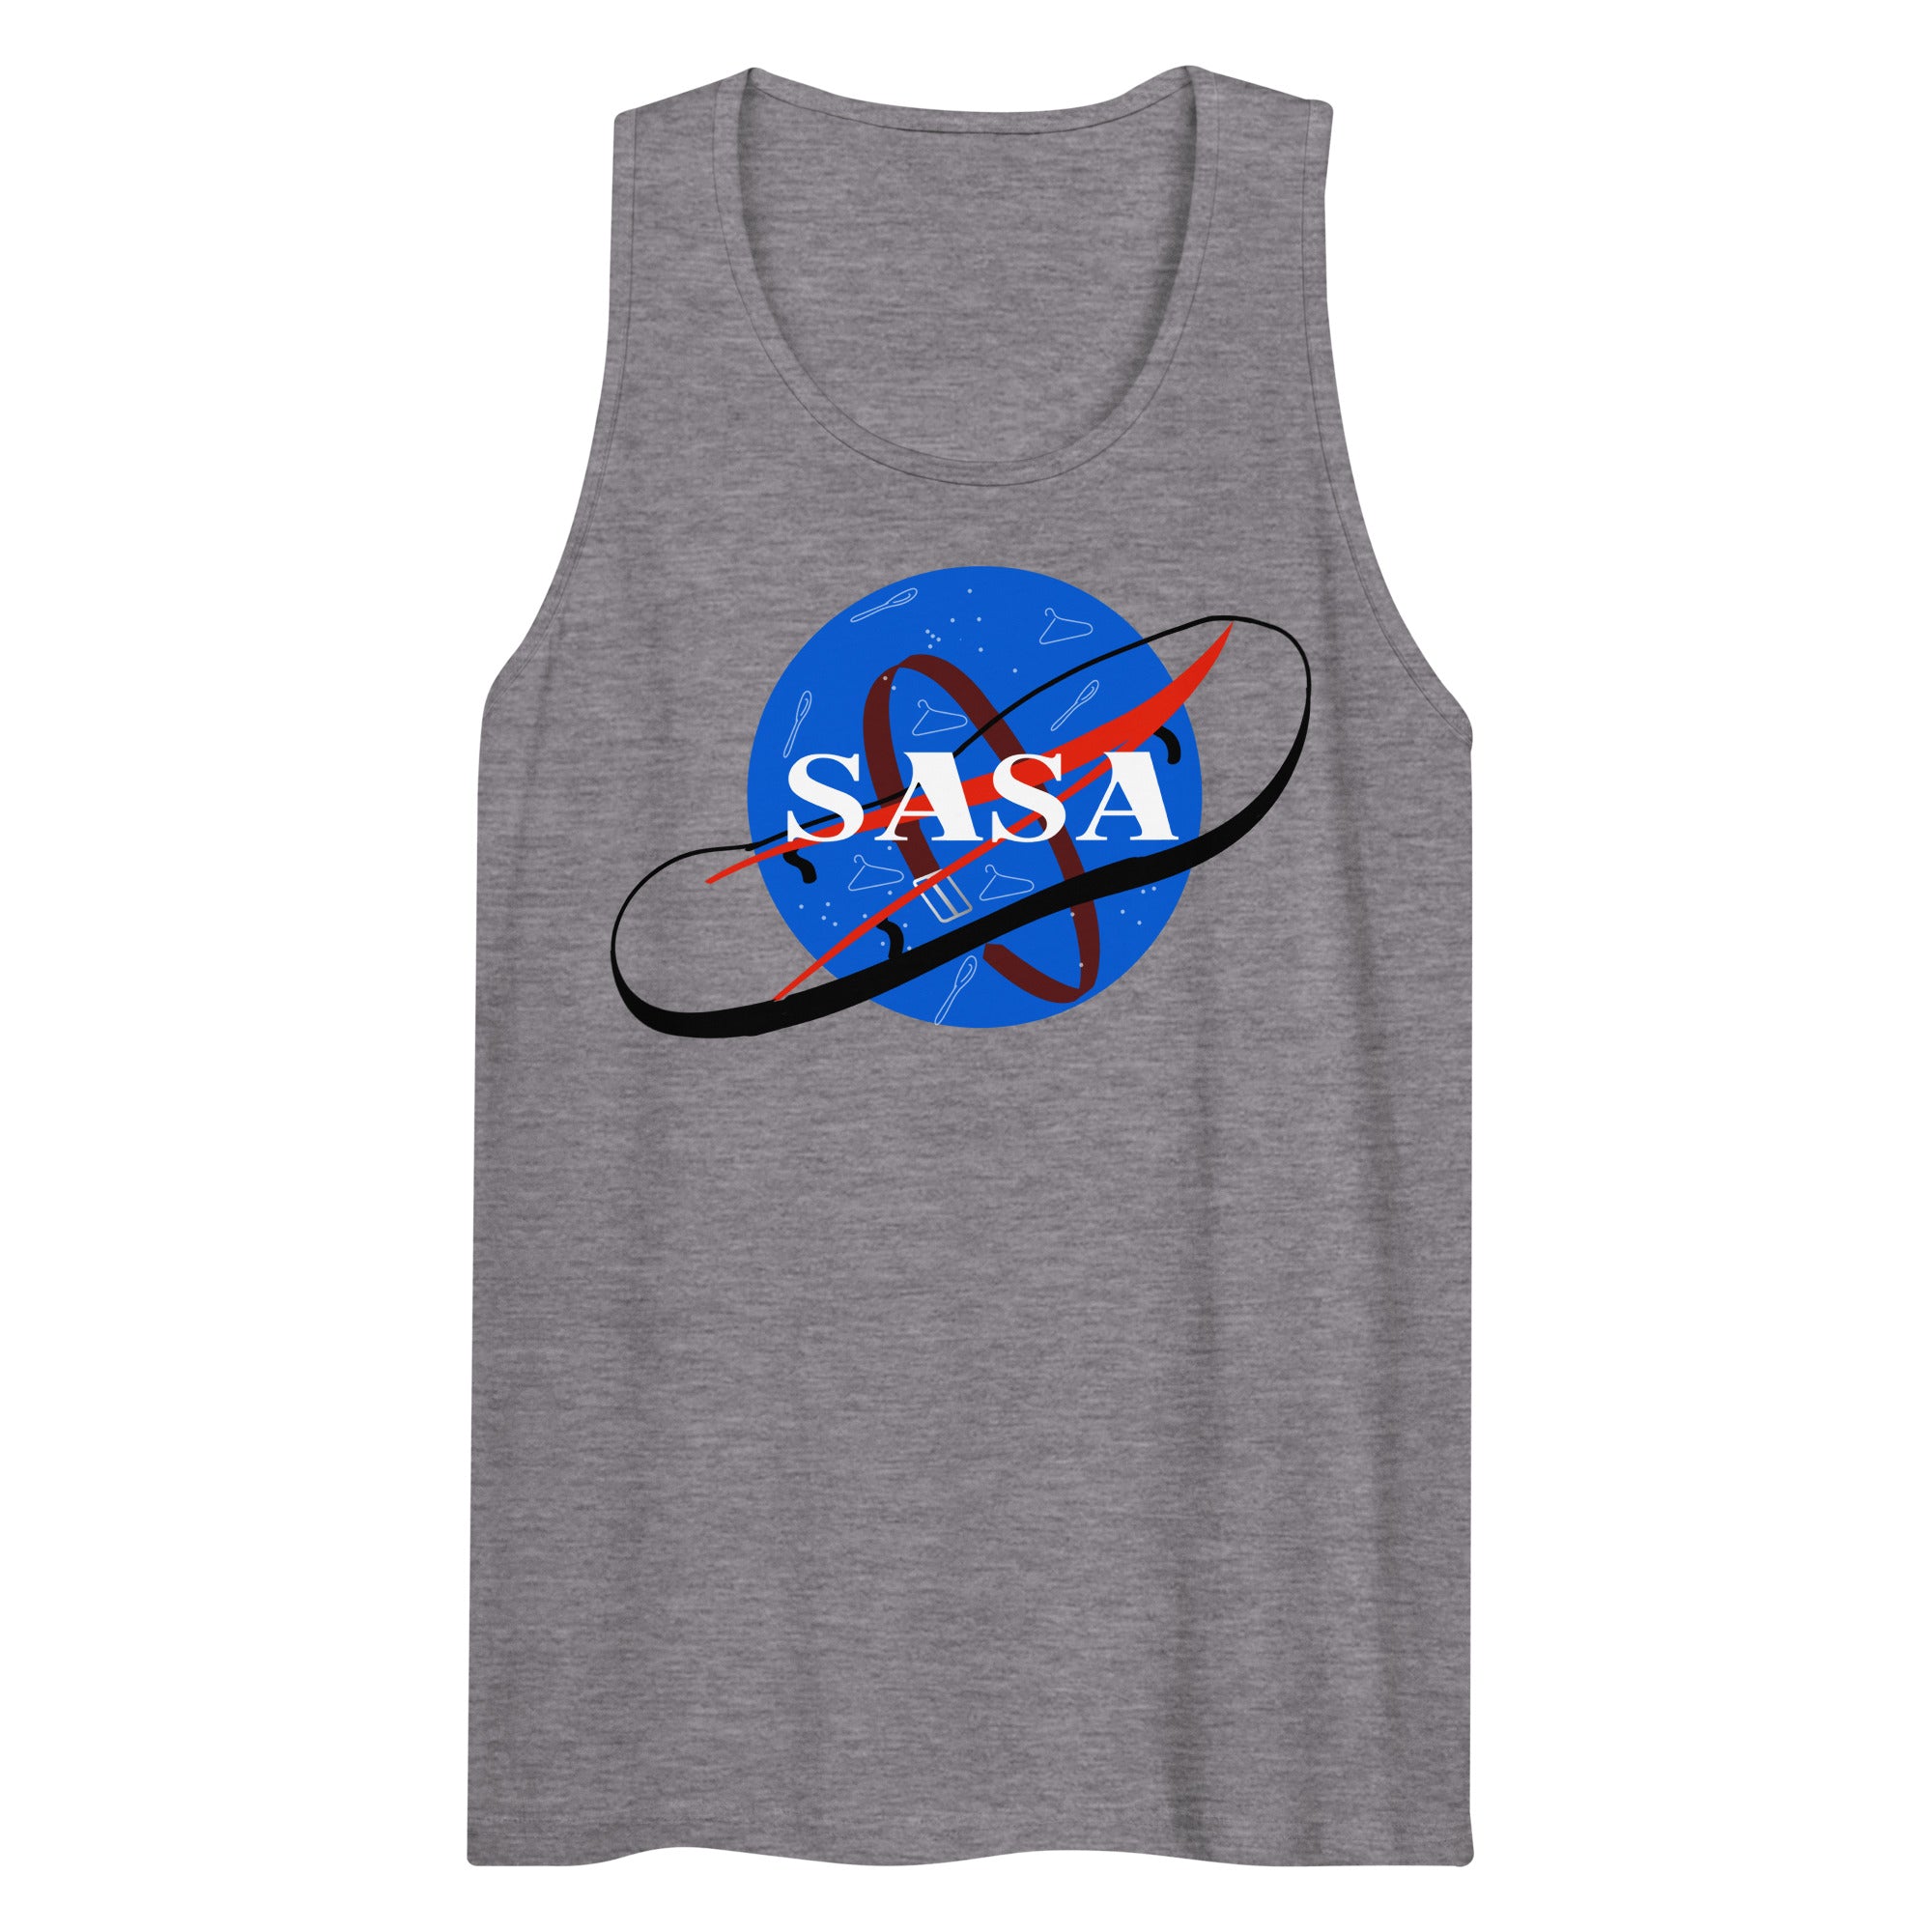 SASA (It's a SLAP) Space Tank Top